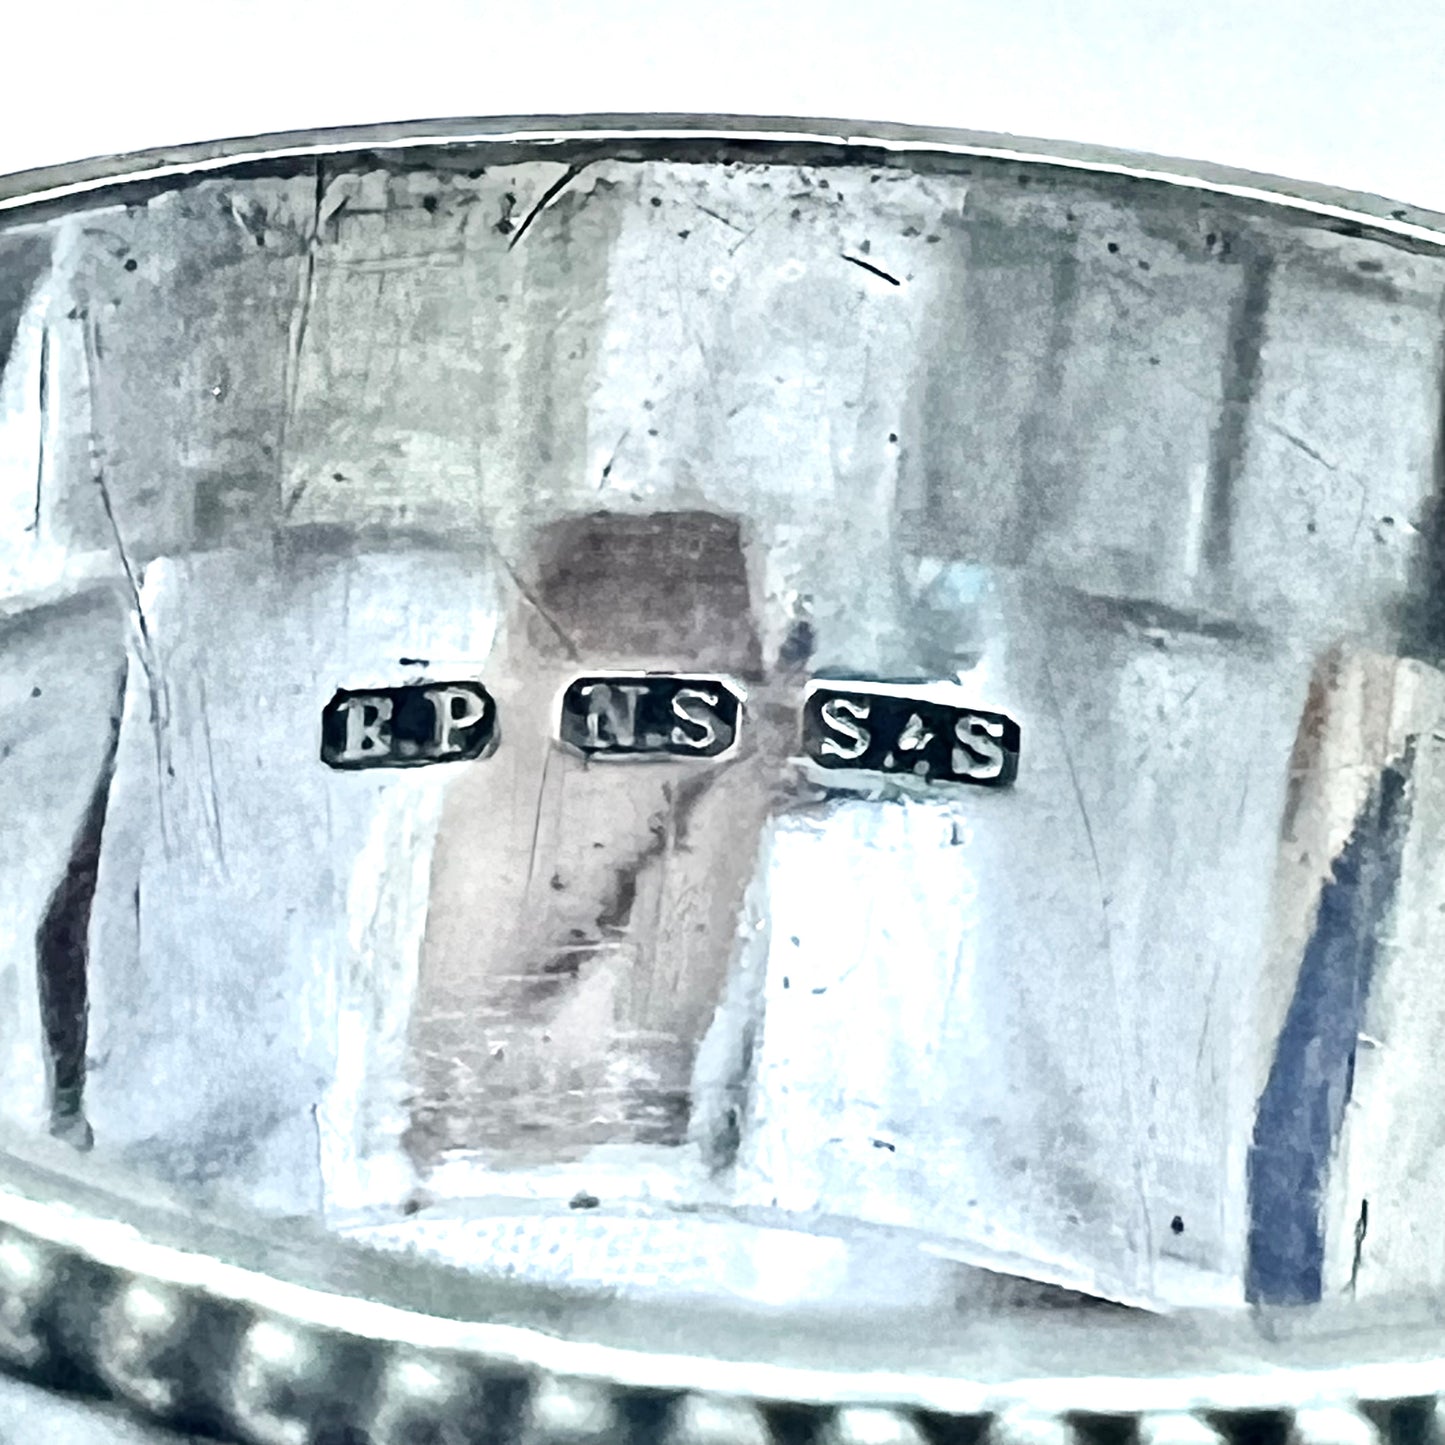 早期澳大利亚镀银餐巾环，约维多利亚晚期，由 Stokes &amp; Son 制作，维多利亚州墨尔本